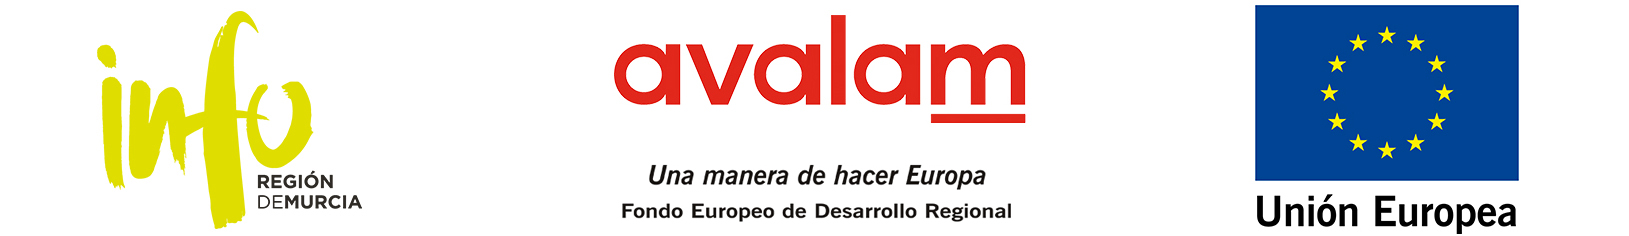 Banner con enlace al sitio web avalam.es